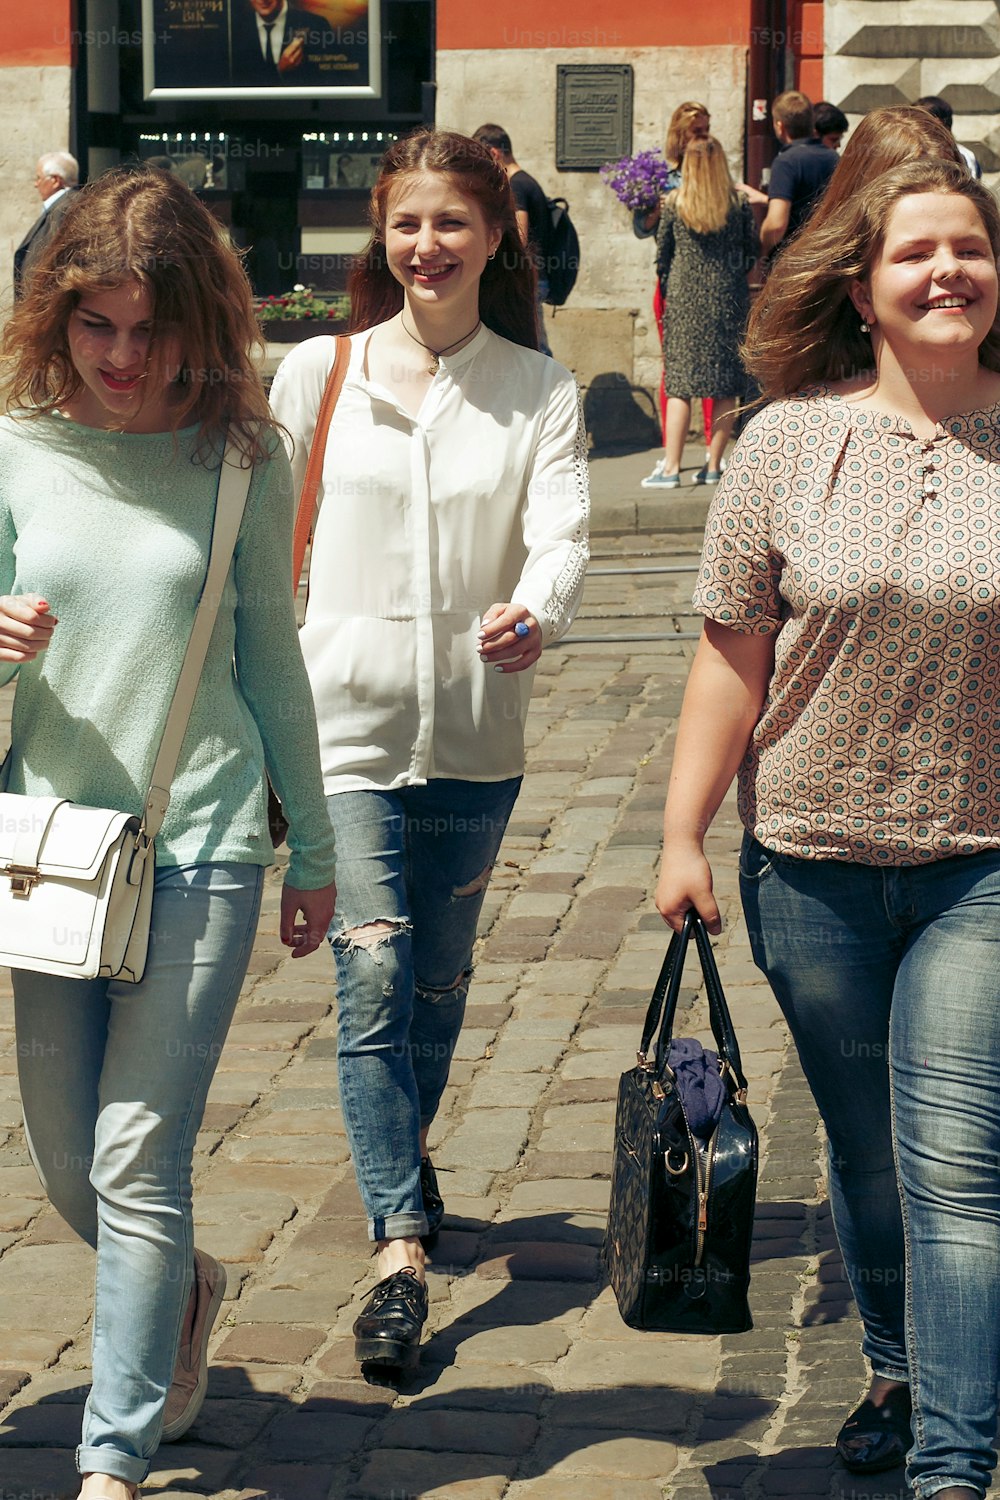 beaucoup de jeunes femmes heureuses marchant en parlant sur le fond de la vieille rue de la ville européenne, filles hipster élégantes s’amusant, moments de bonheur, concept d’amitié